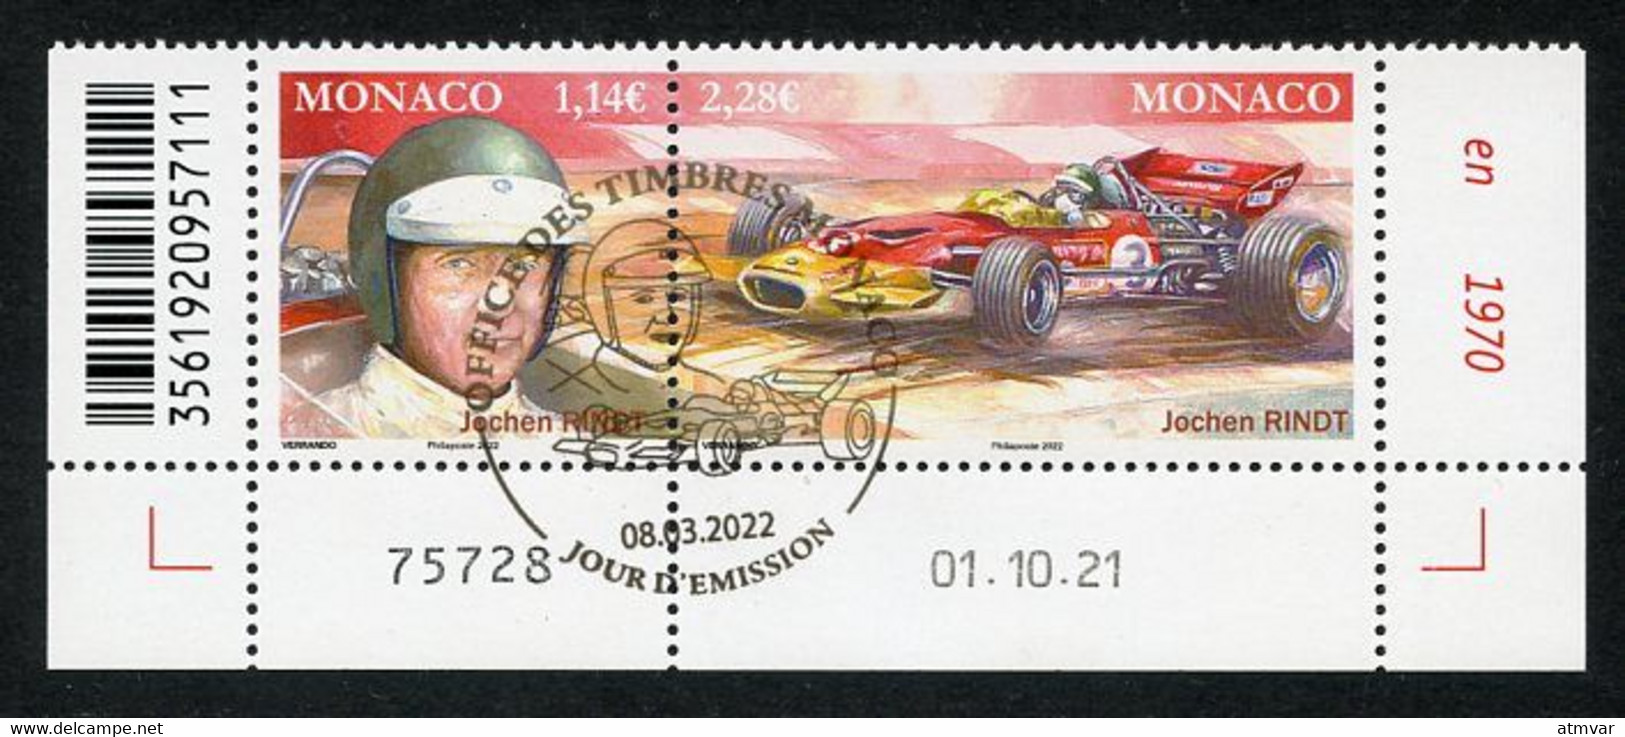 MONACO (2022) Pilotes Mythiques, Formula Formule 1, F1, Jochen Rindt (1942-1970), Grand Prix, Lotus 72 - Coin Daté - Used Stamps